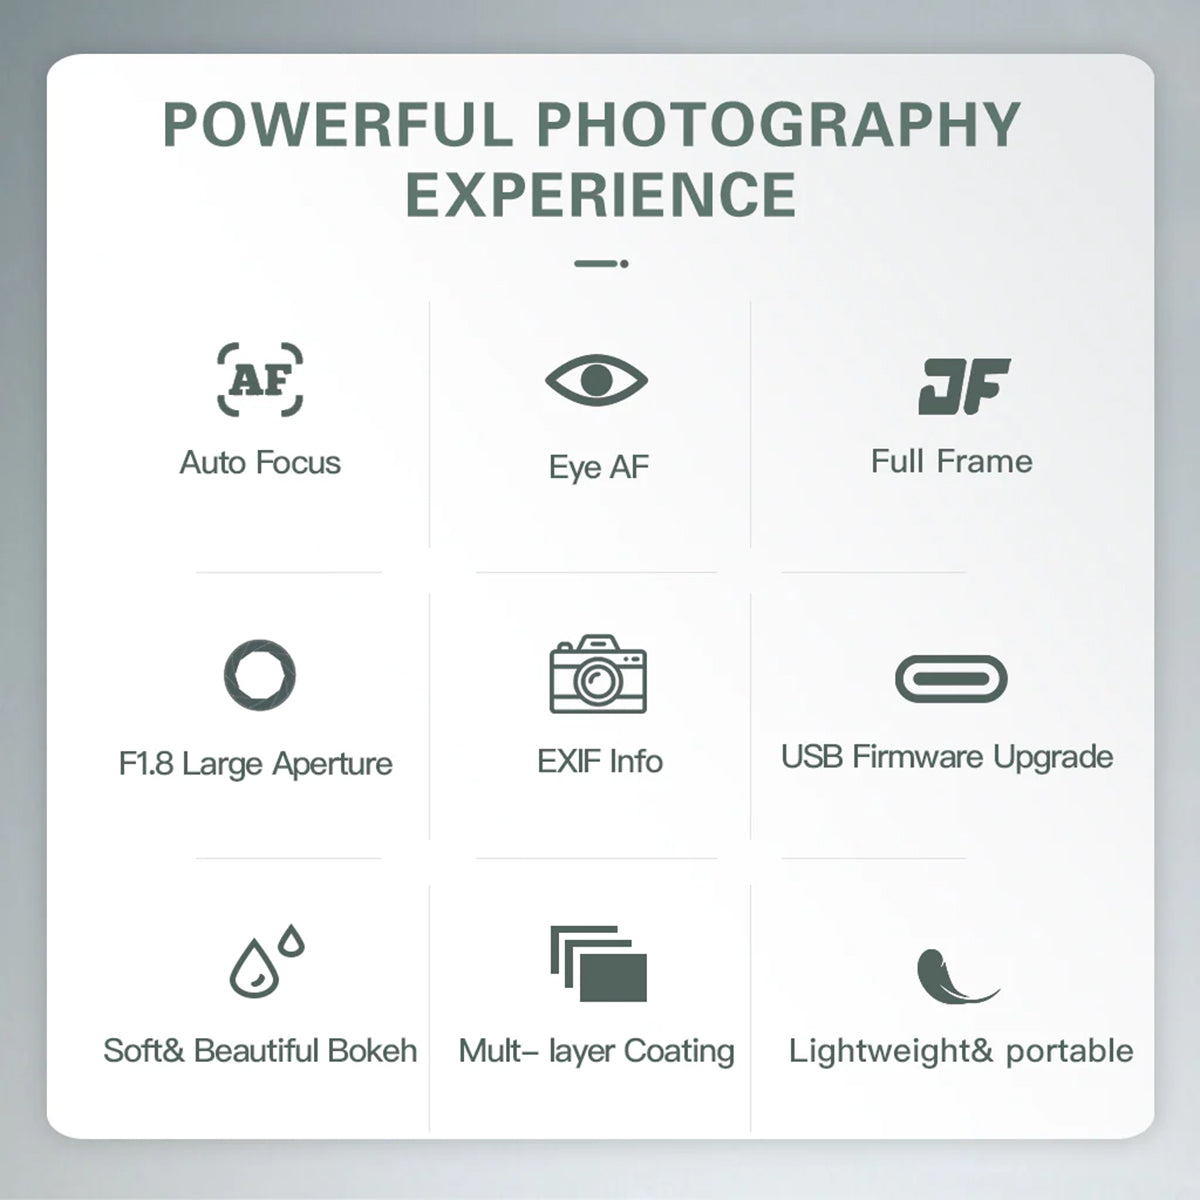 Viltrox 28mm f1.8 FE Auto Focus Prime Lens Sony E-Mount Full Frame Camera